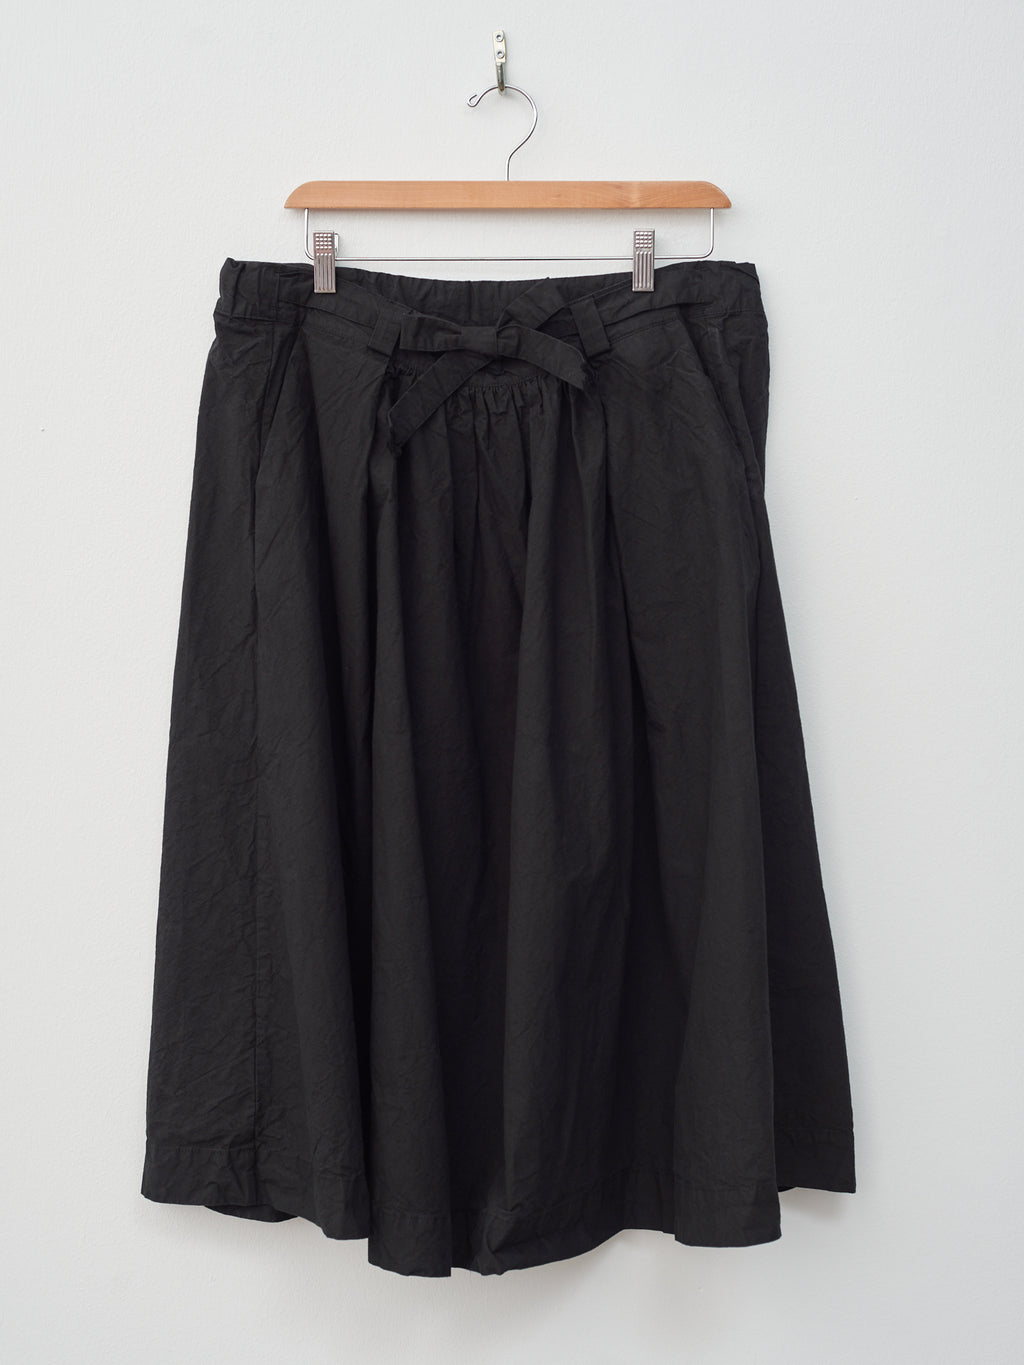 Namu Shop - Veritecoeur Daily Skirt - Black